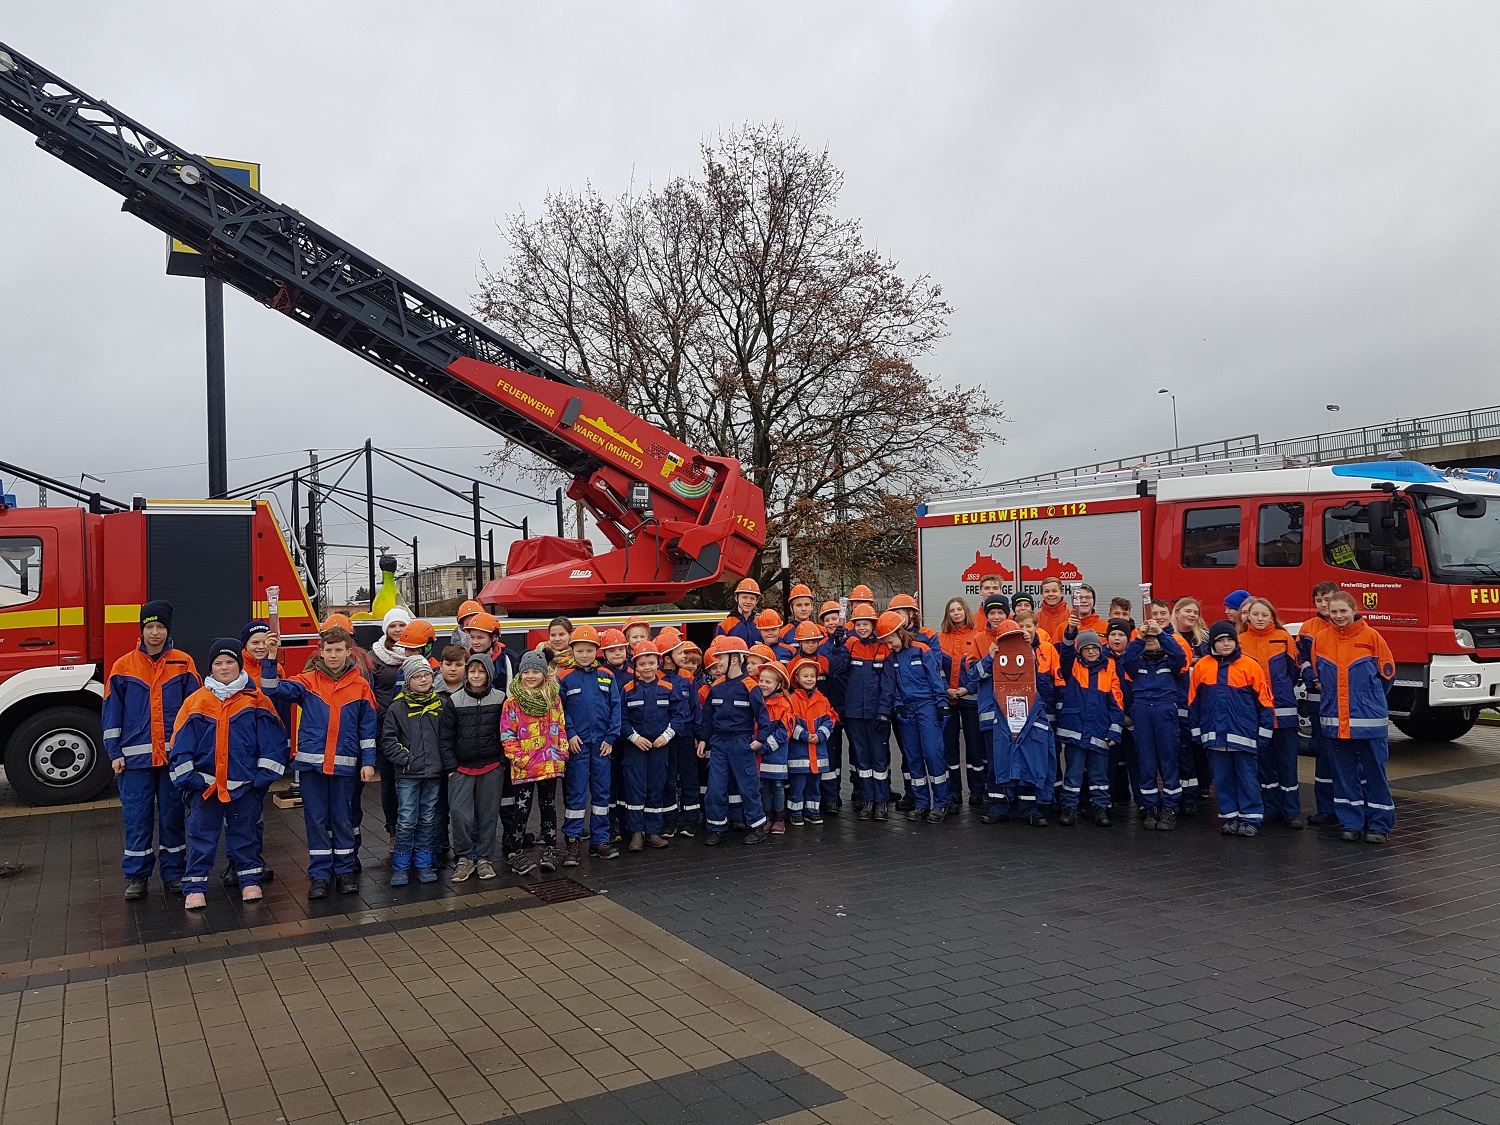 Feuerwehrmettwurst Selfie-Contest 2019 in Waren, Dezember 2019